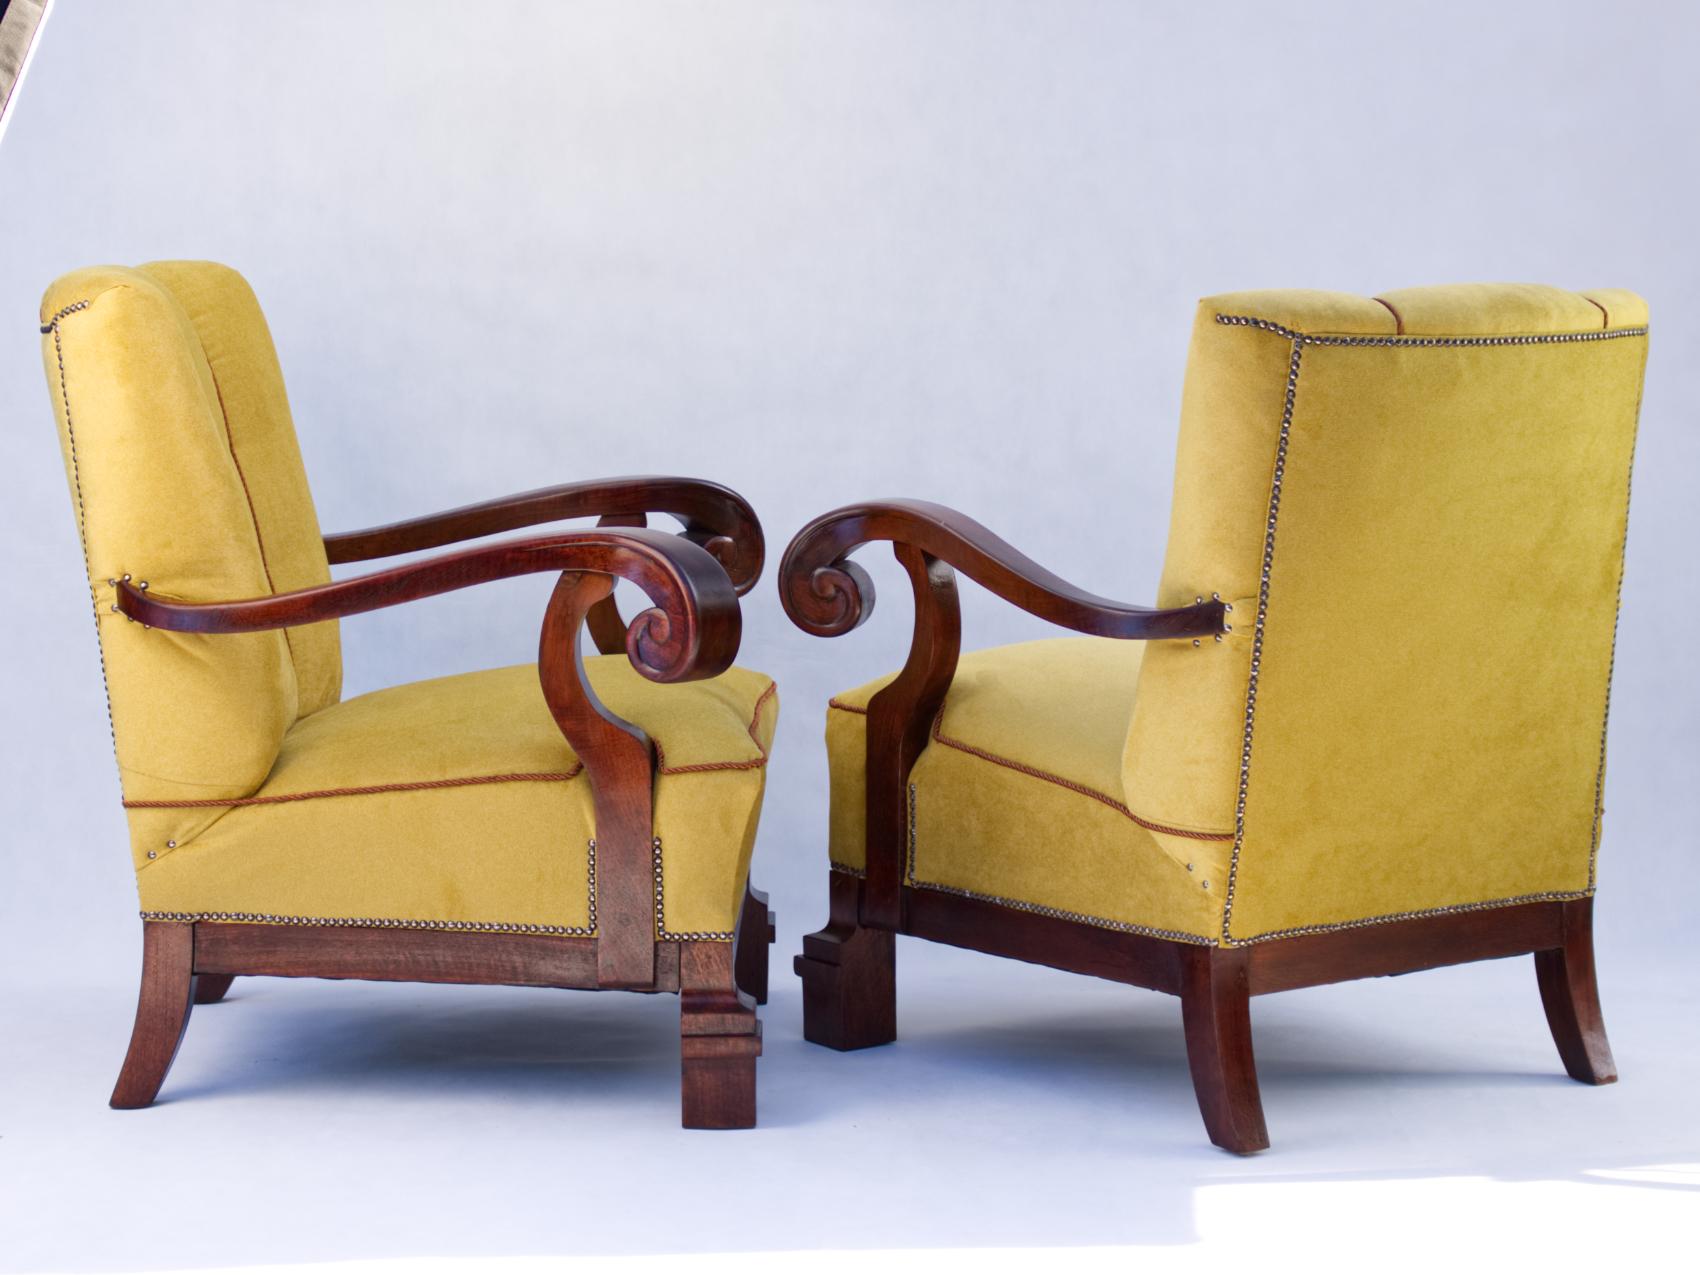 Handgeschnitzte Jugendstil-Sessel aus Nussbaumholz, um 1920 (20. Jahrhundert)